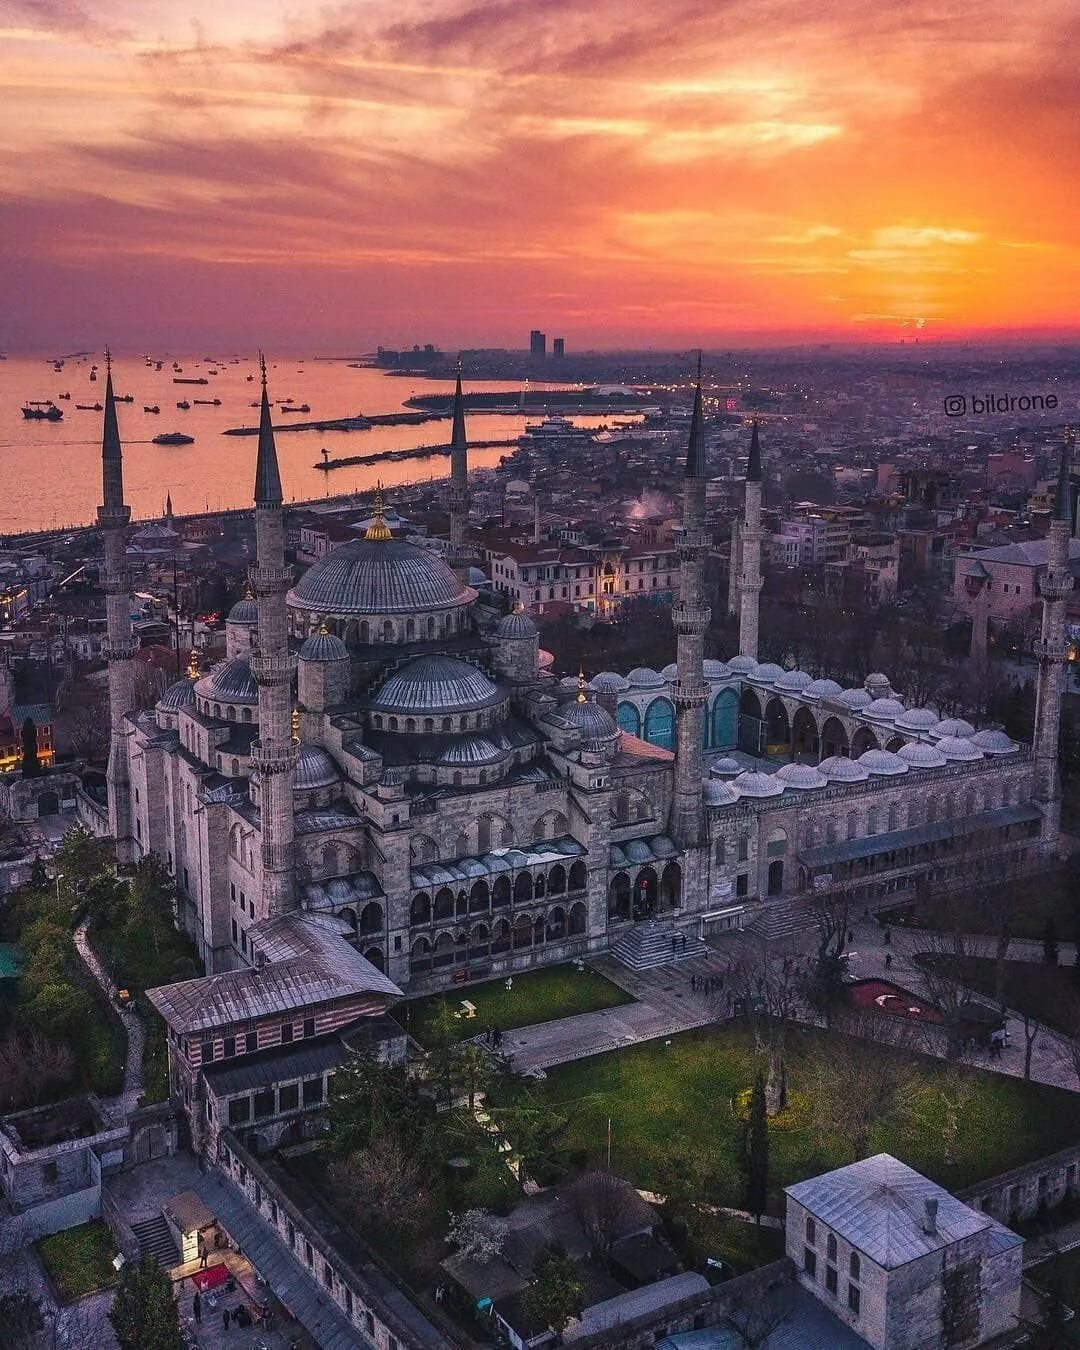 Город султанахмет. Турция Истамбул. Туреччина Стамбул. Столицы Турции Истанбул. Турция Бейоглу.